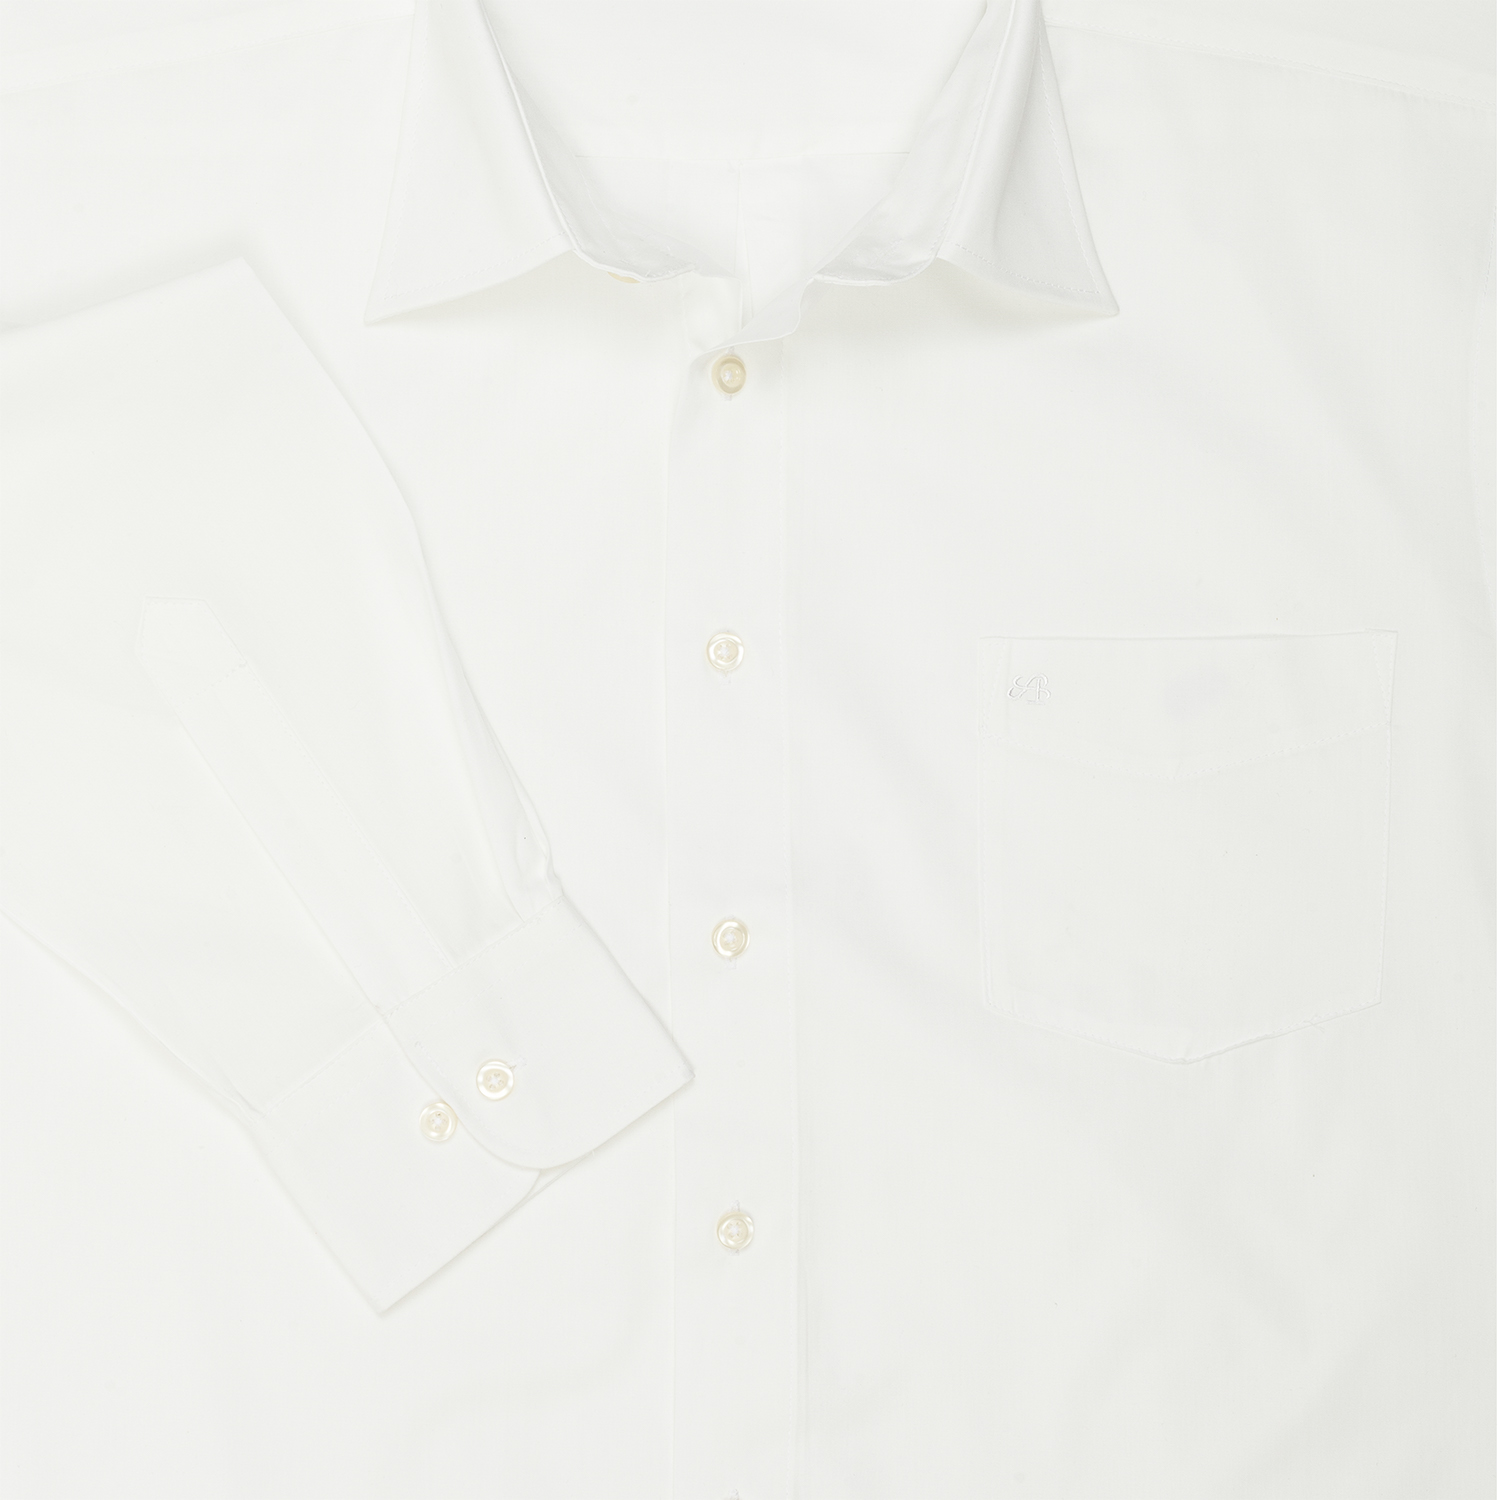 Weißes Herren Langarm Hemd  von ARRIVEE in großen Größen von XL bis 6XL